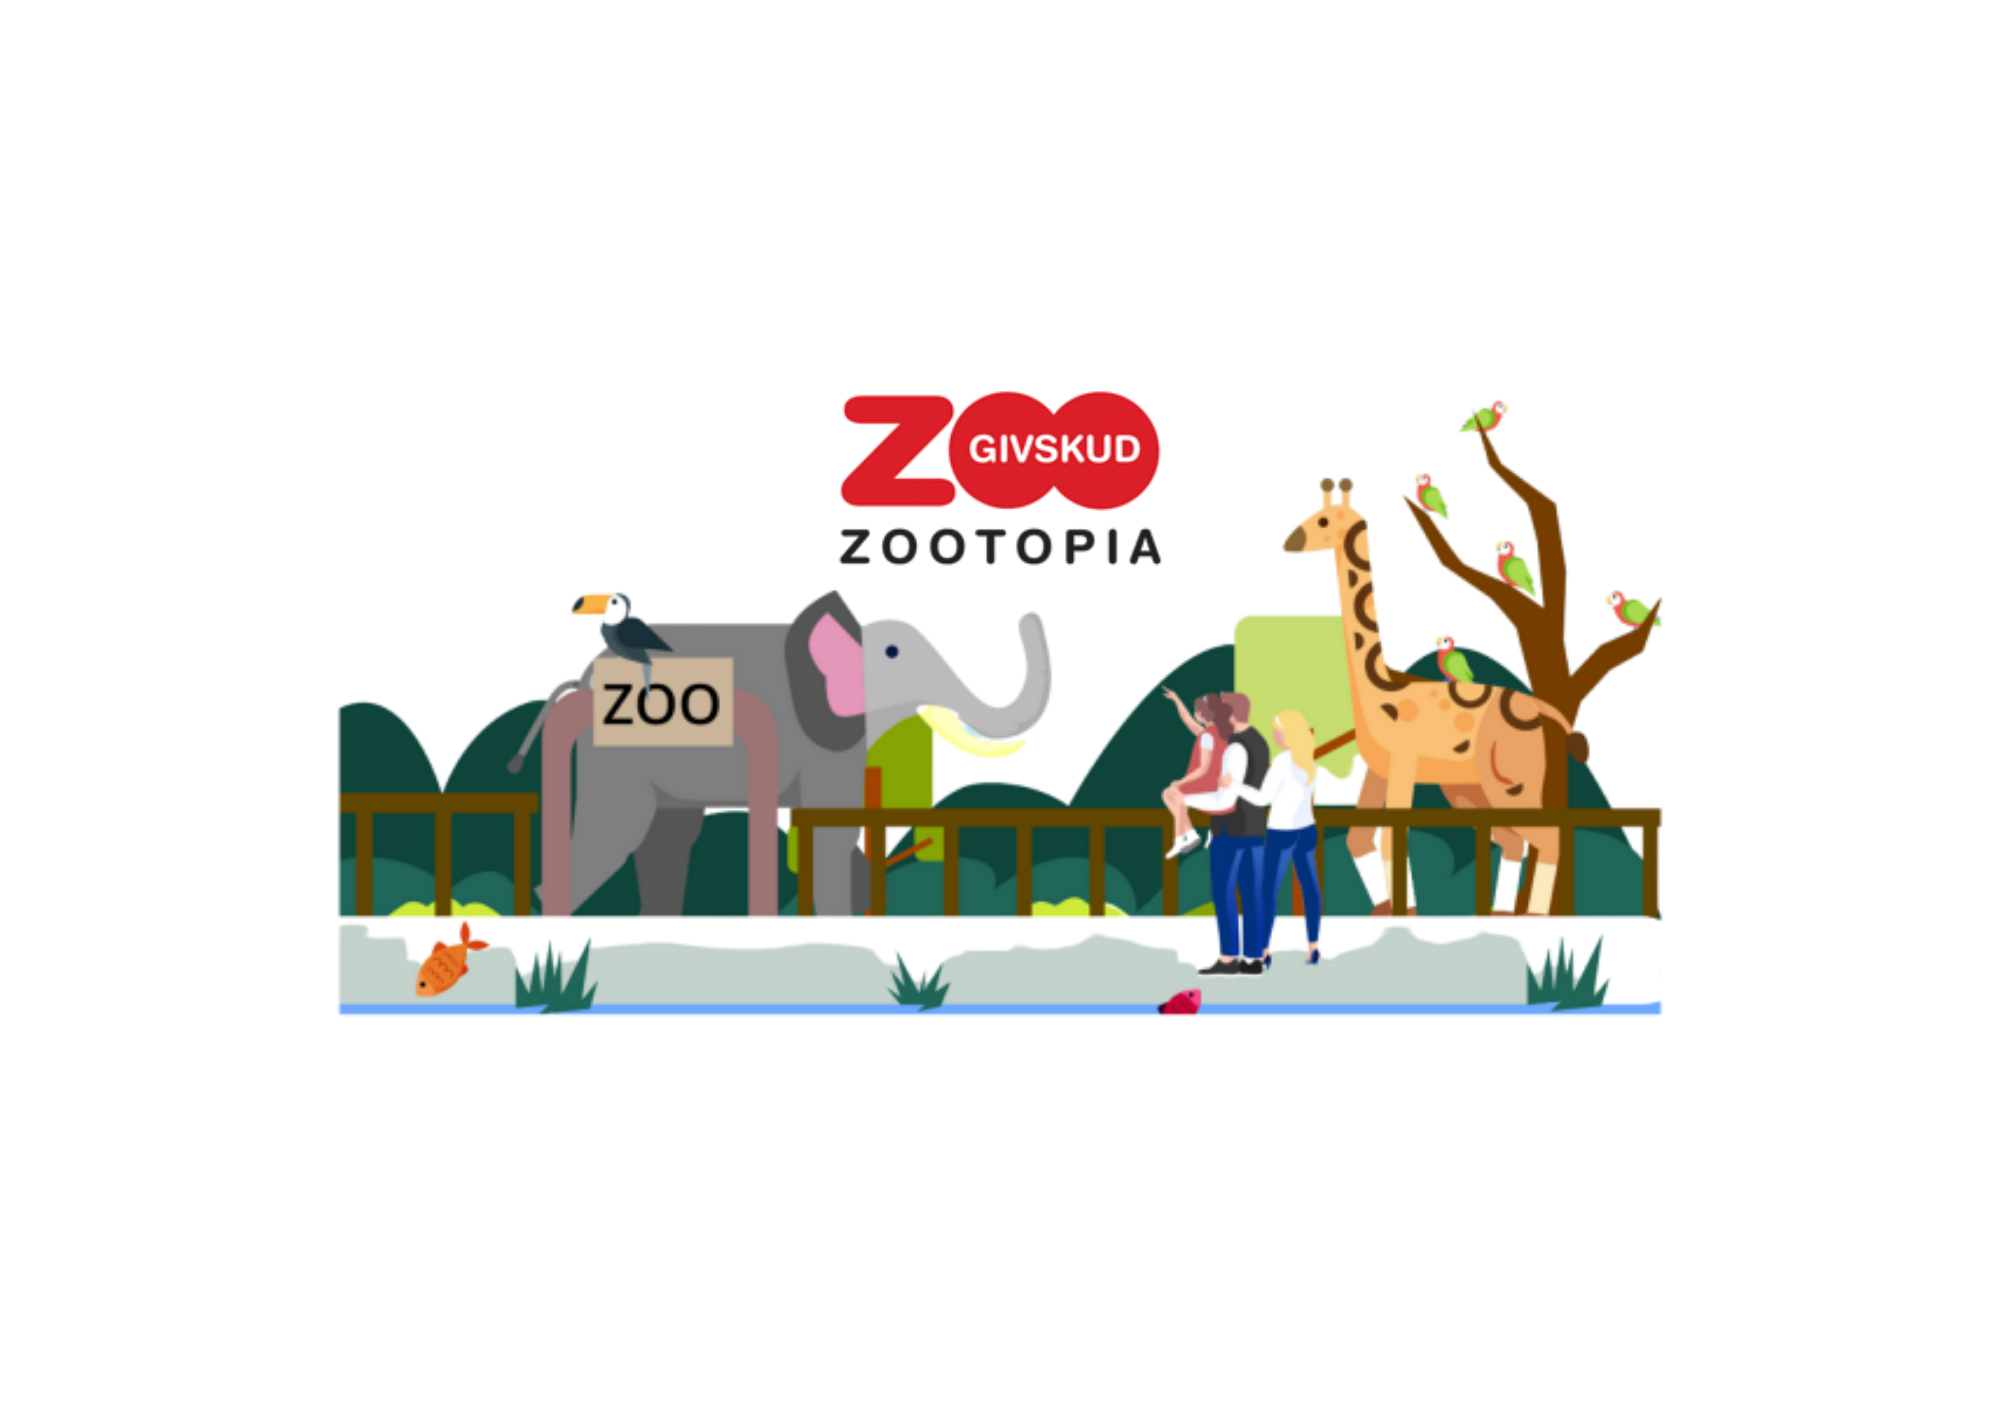 Givskud-zoo-velkommen-kampagne